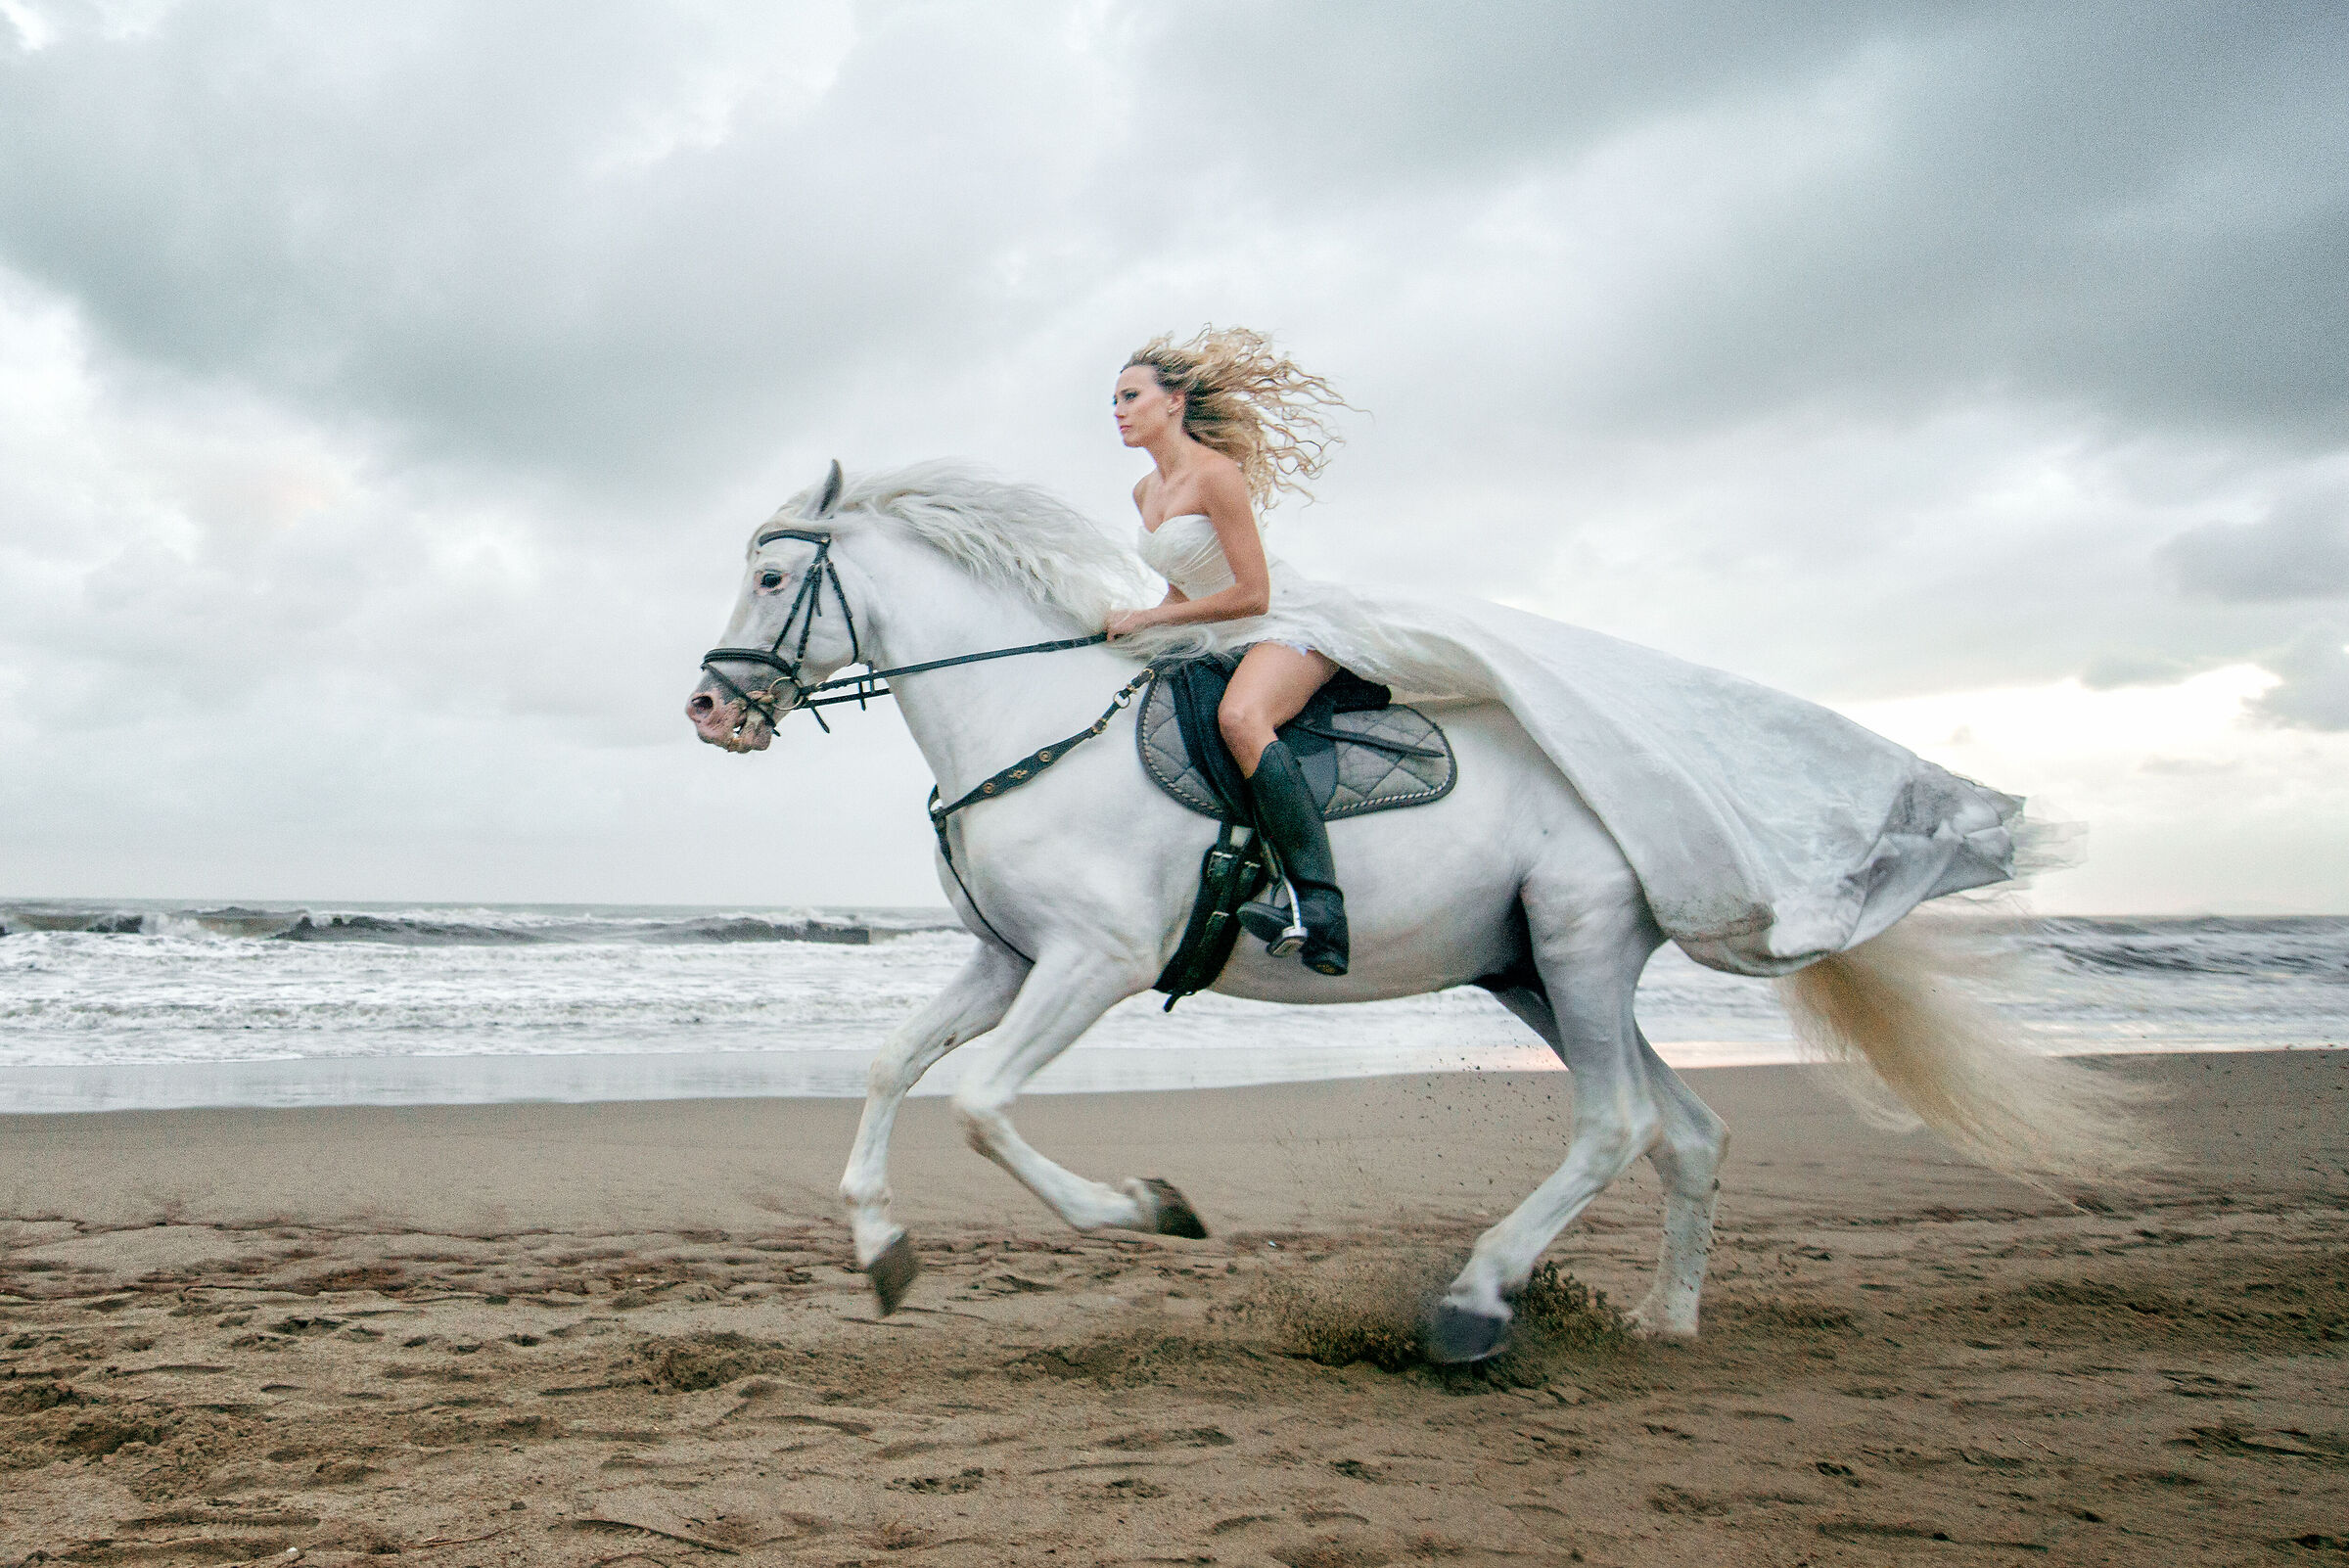 Лежа на коне. Девушка на коне. Фотосессия с белой лошадью. Девушка скачет на коне. Девушка с лошадью.